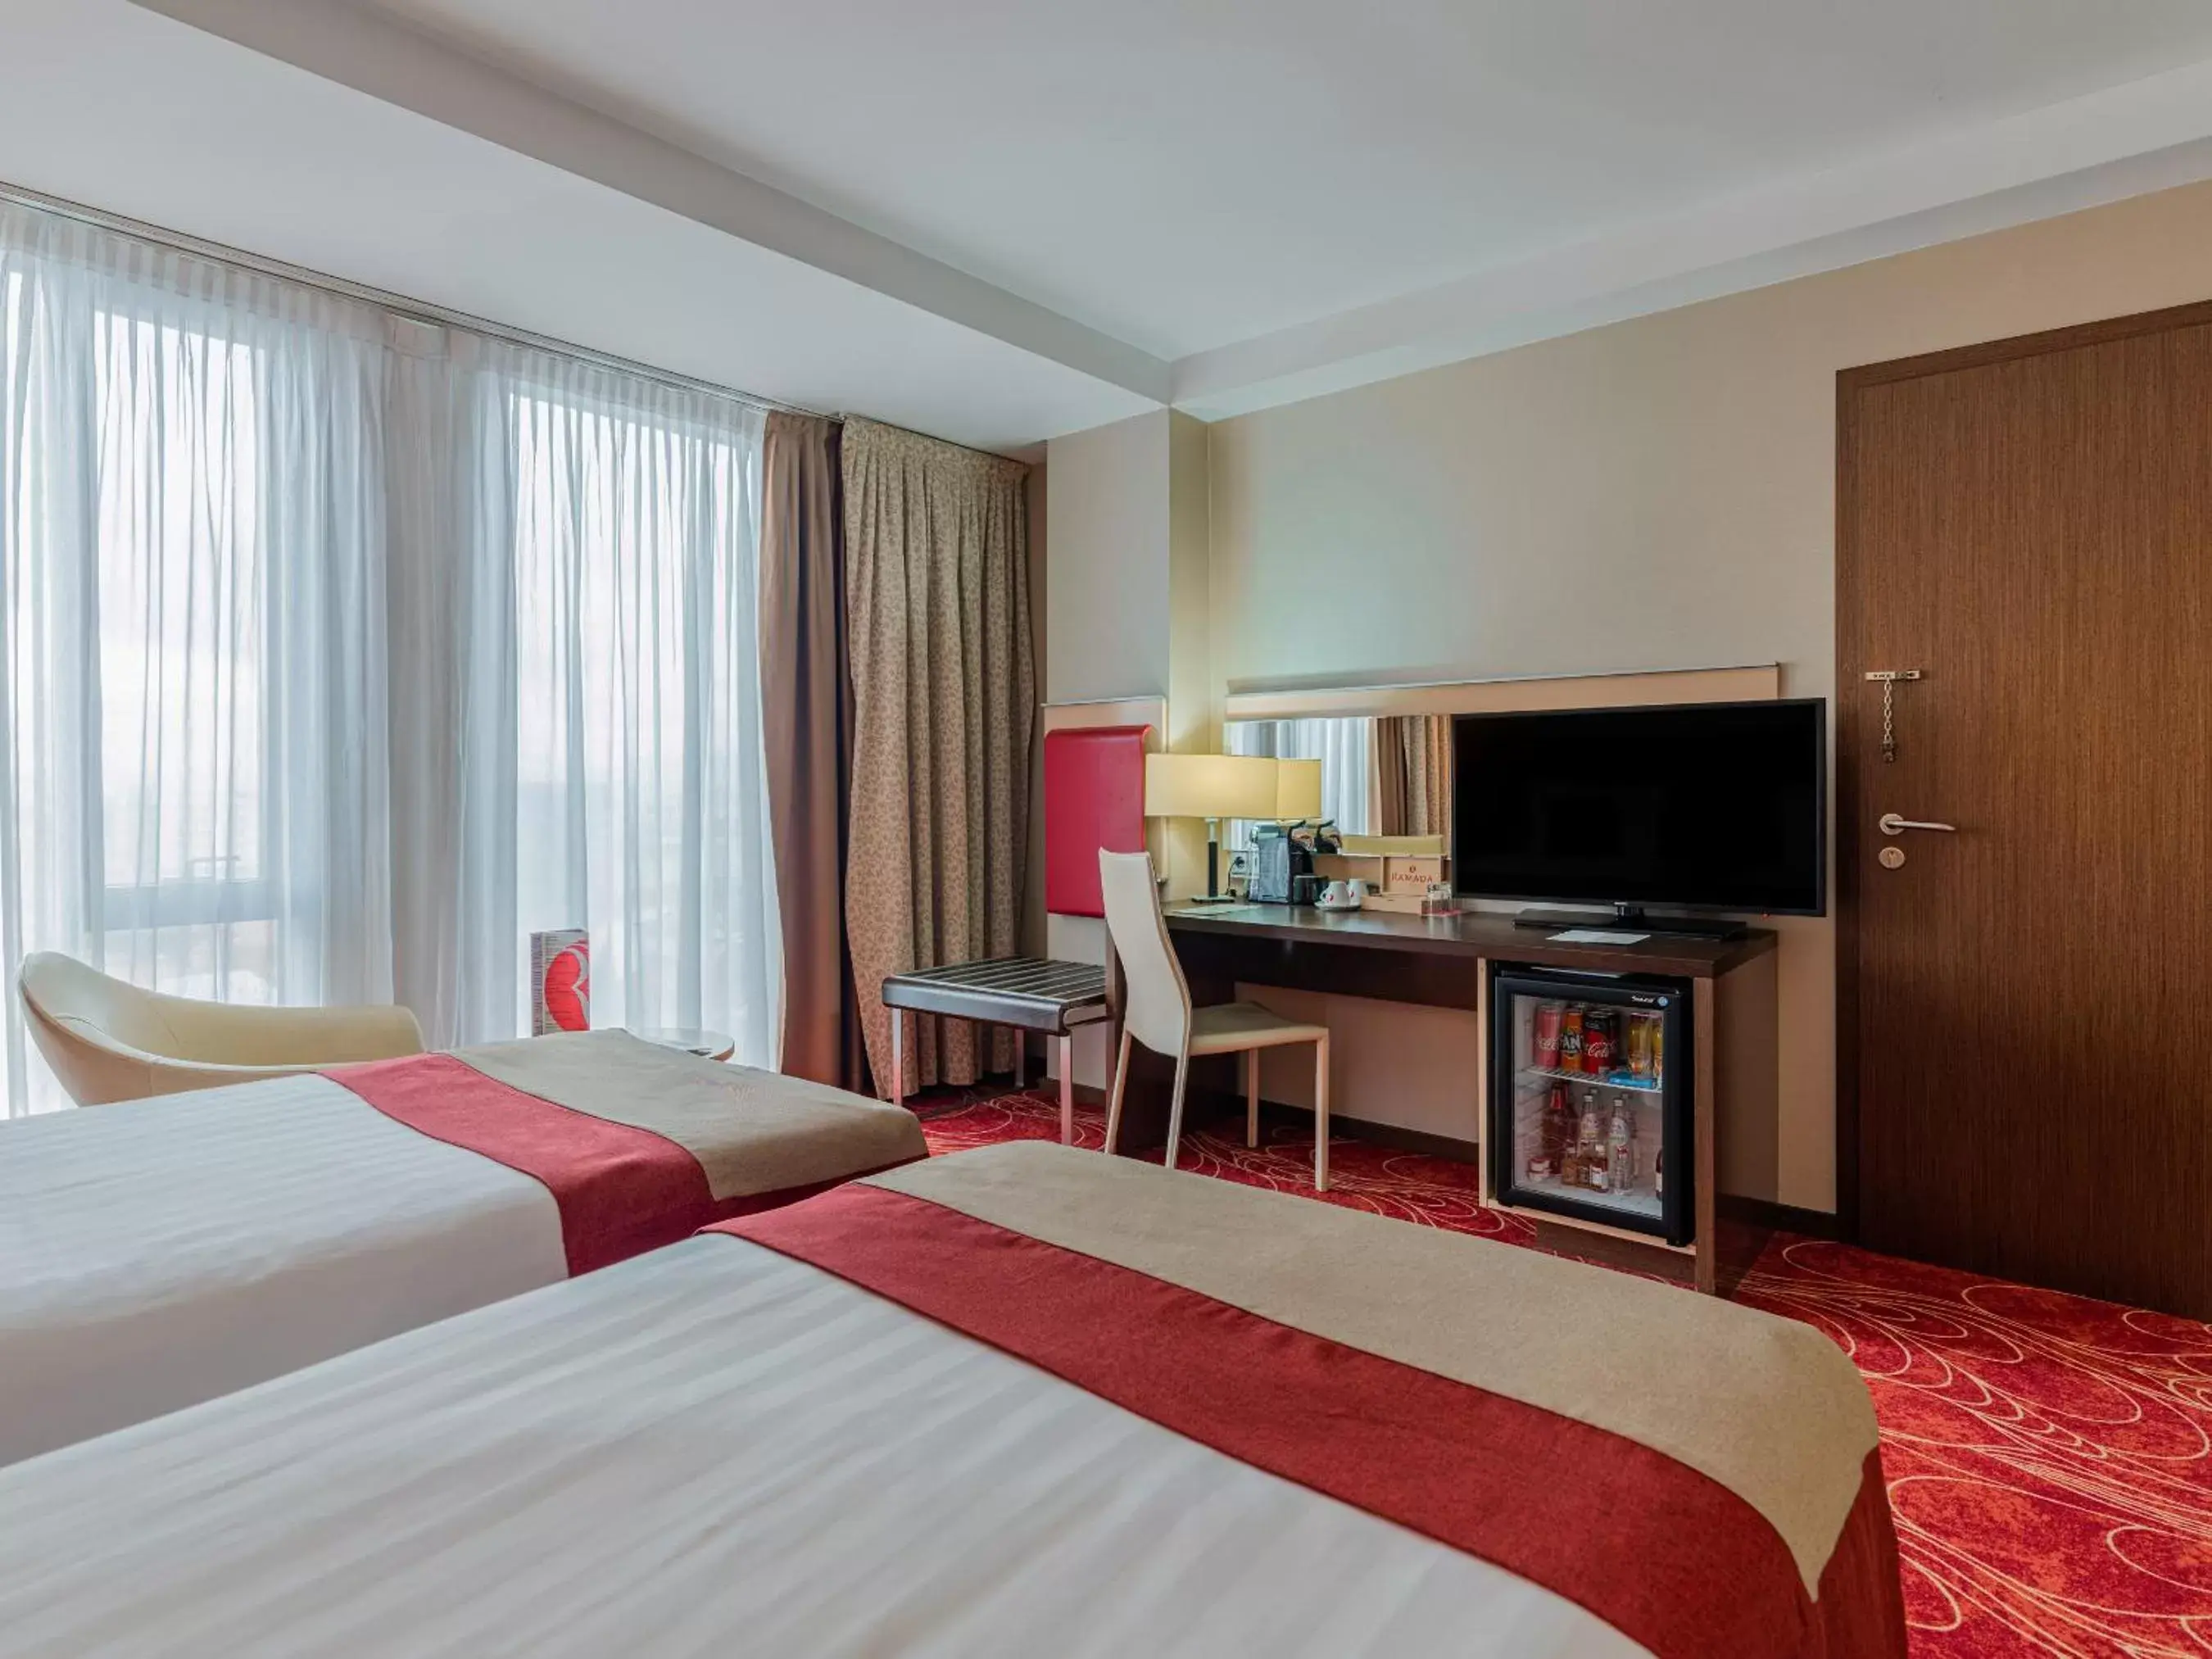 TV and multimedia, Bed in Ramada Sibiu Hotel